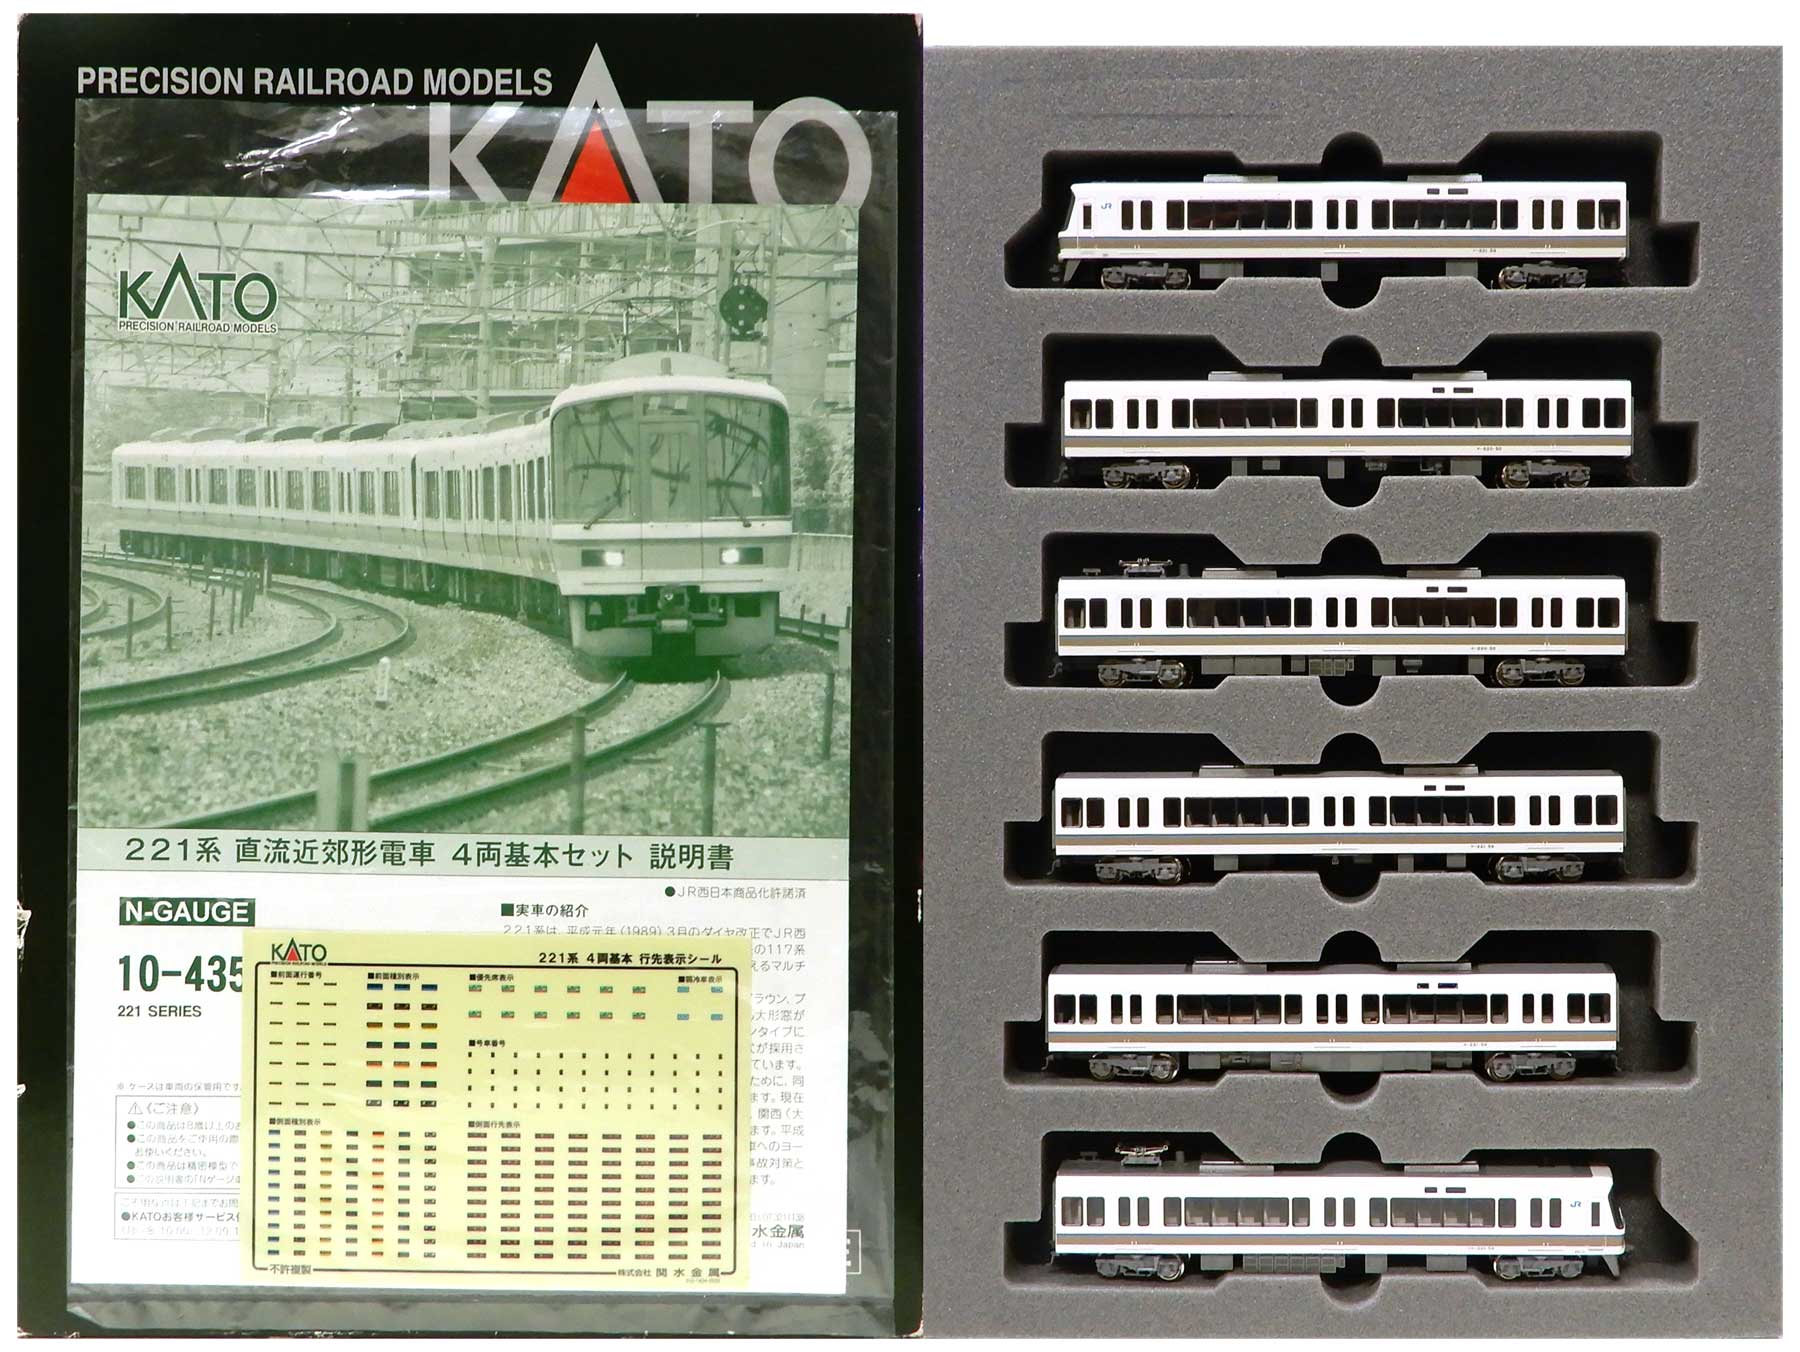 税込) KATO 221系電車 KATO Nゲージ 鉄道模型 221系 dcnationtours.com 